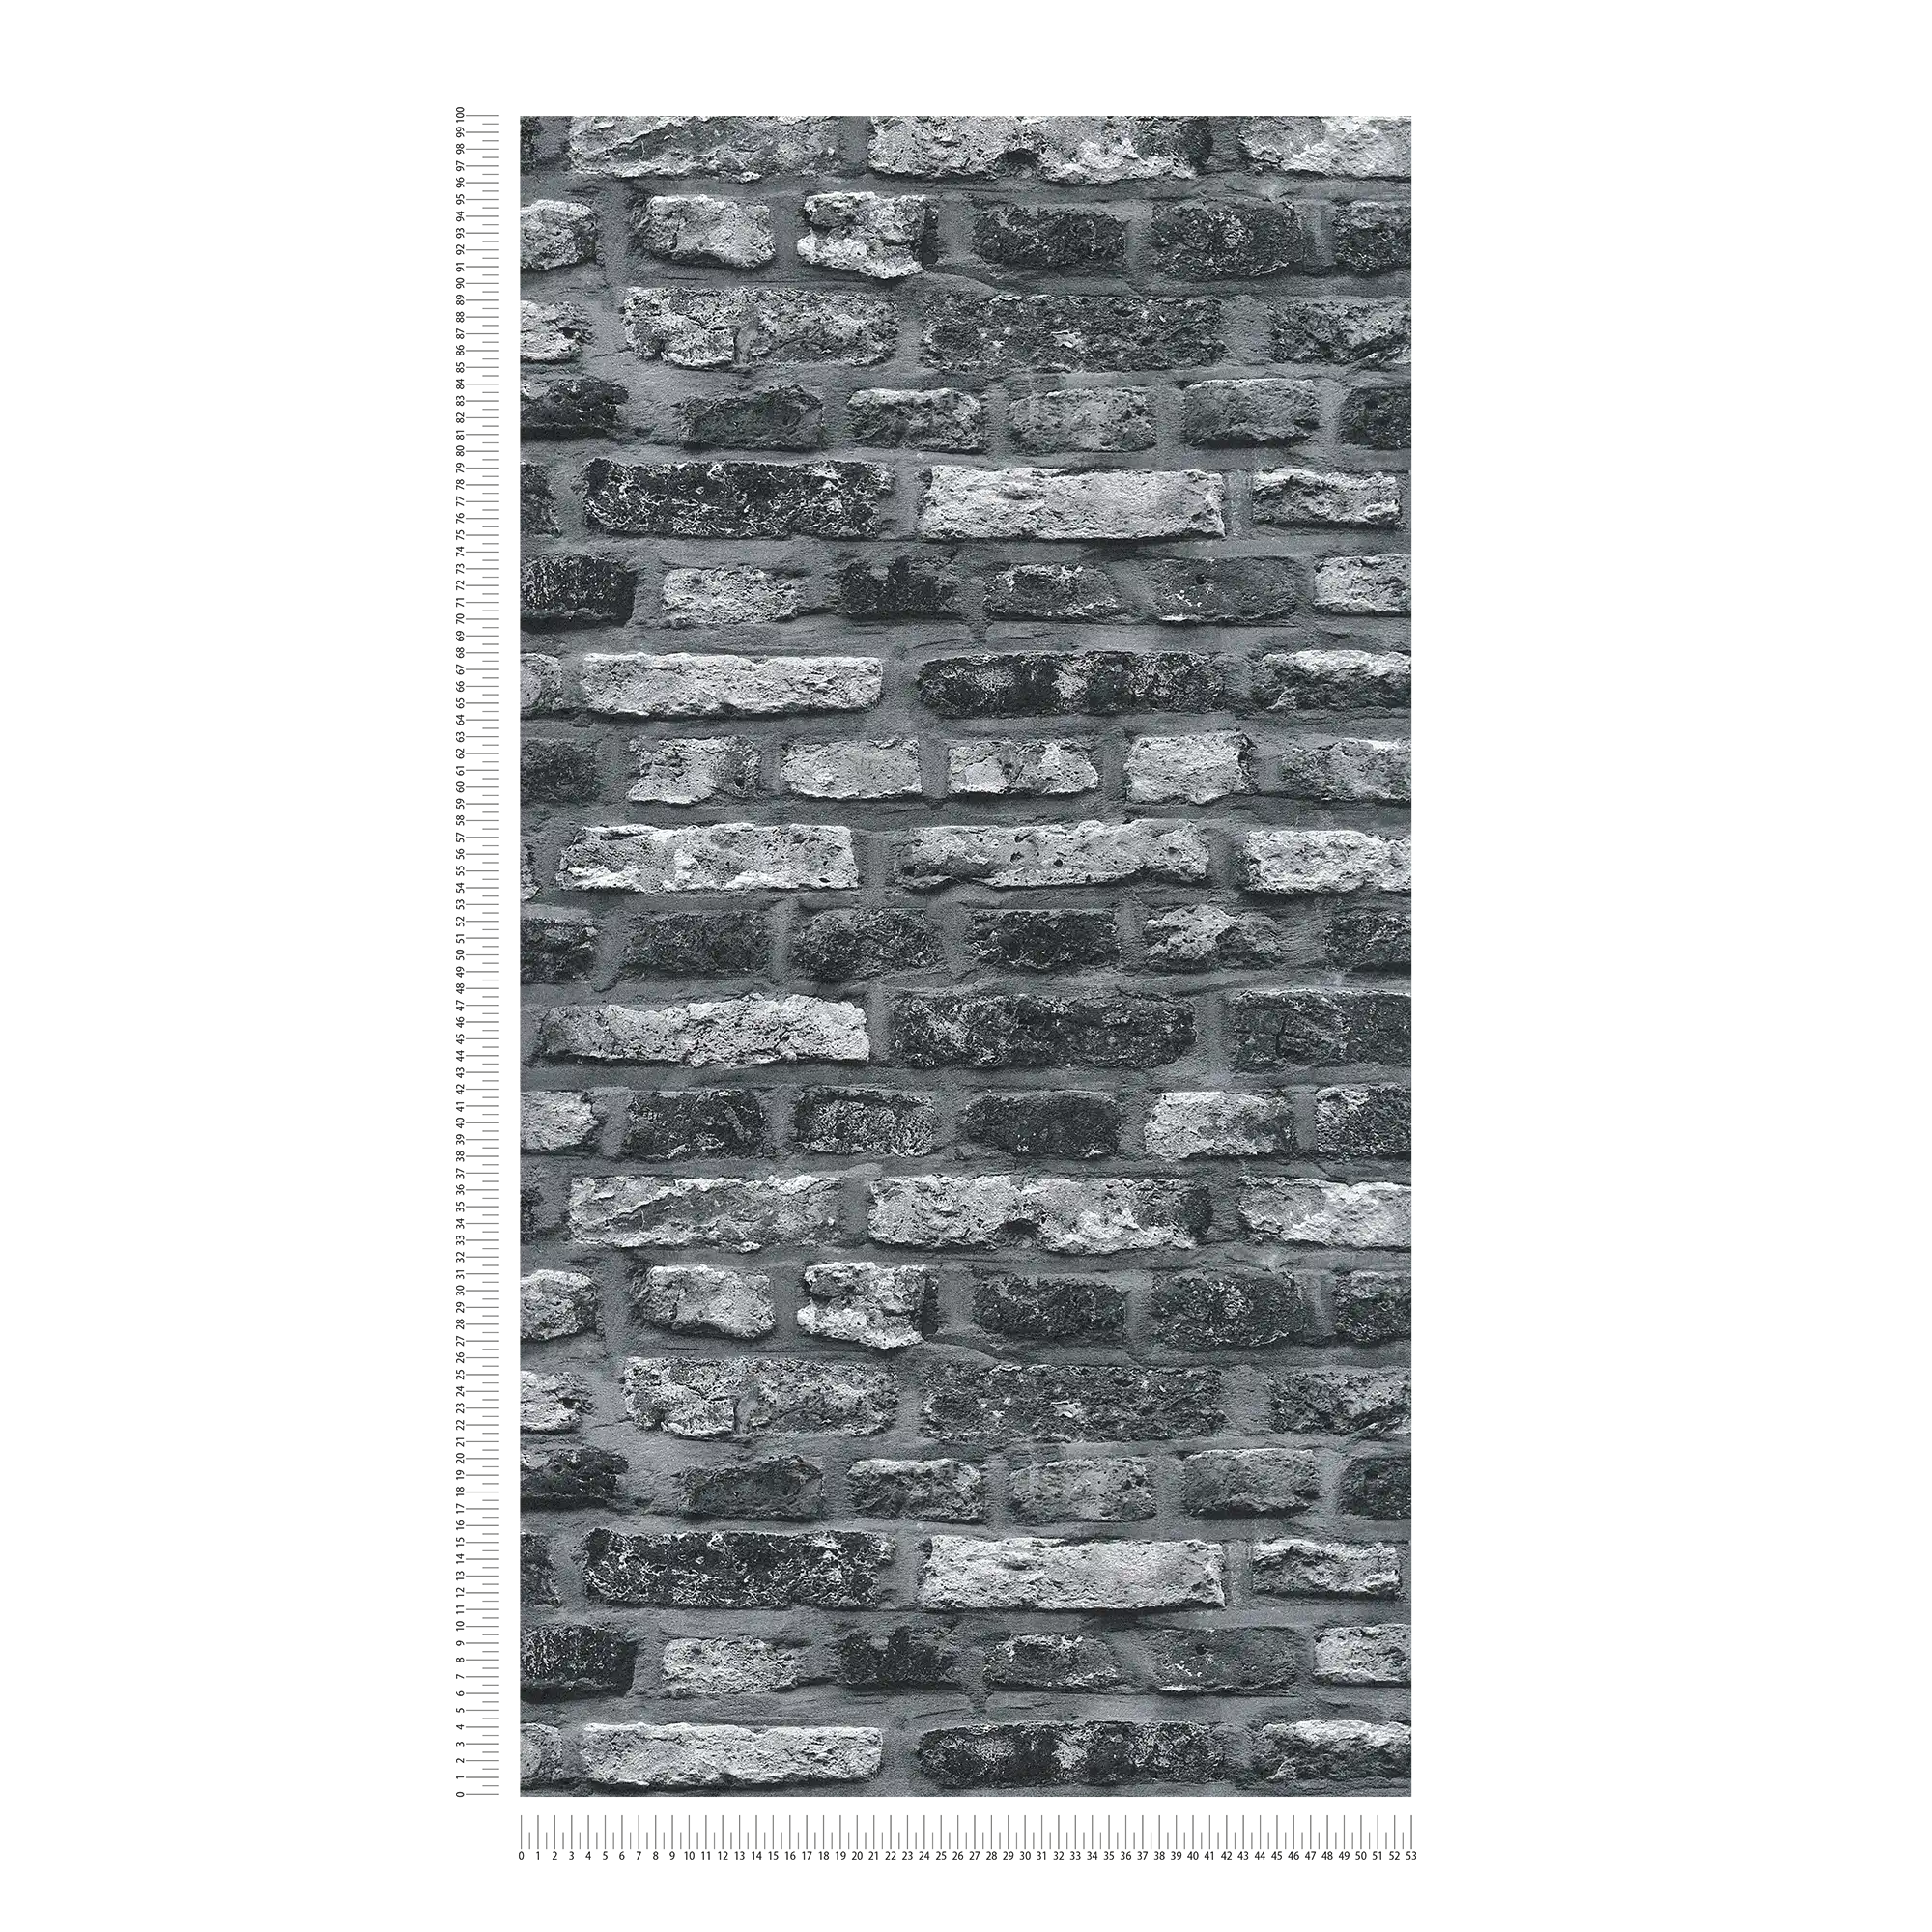             Papier peint intissé imitation pierre, mur de briques sombres - gris, noir
        